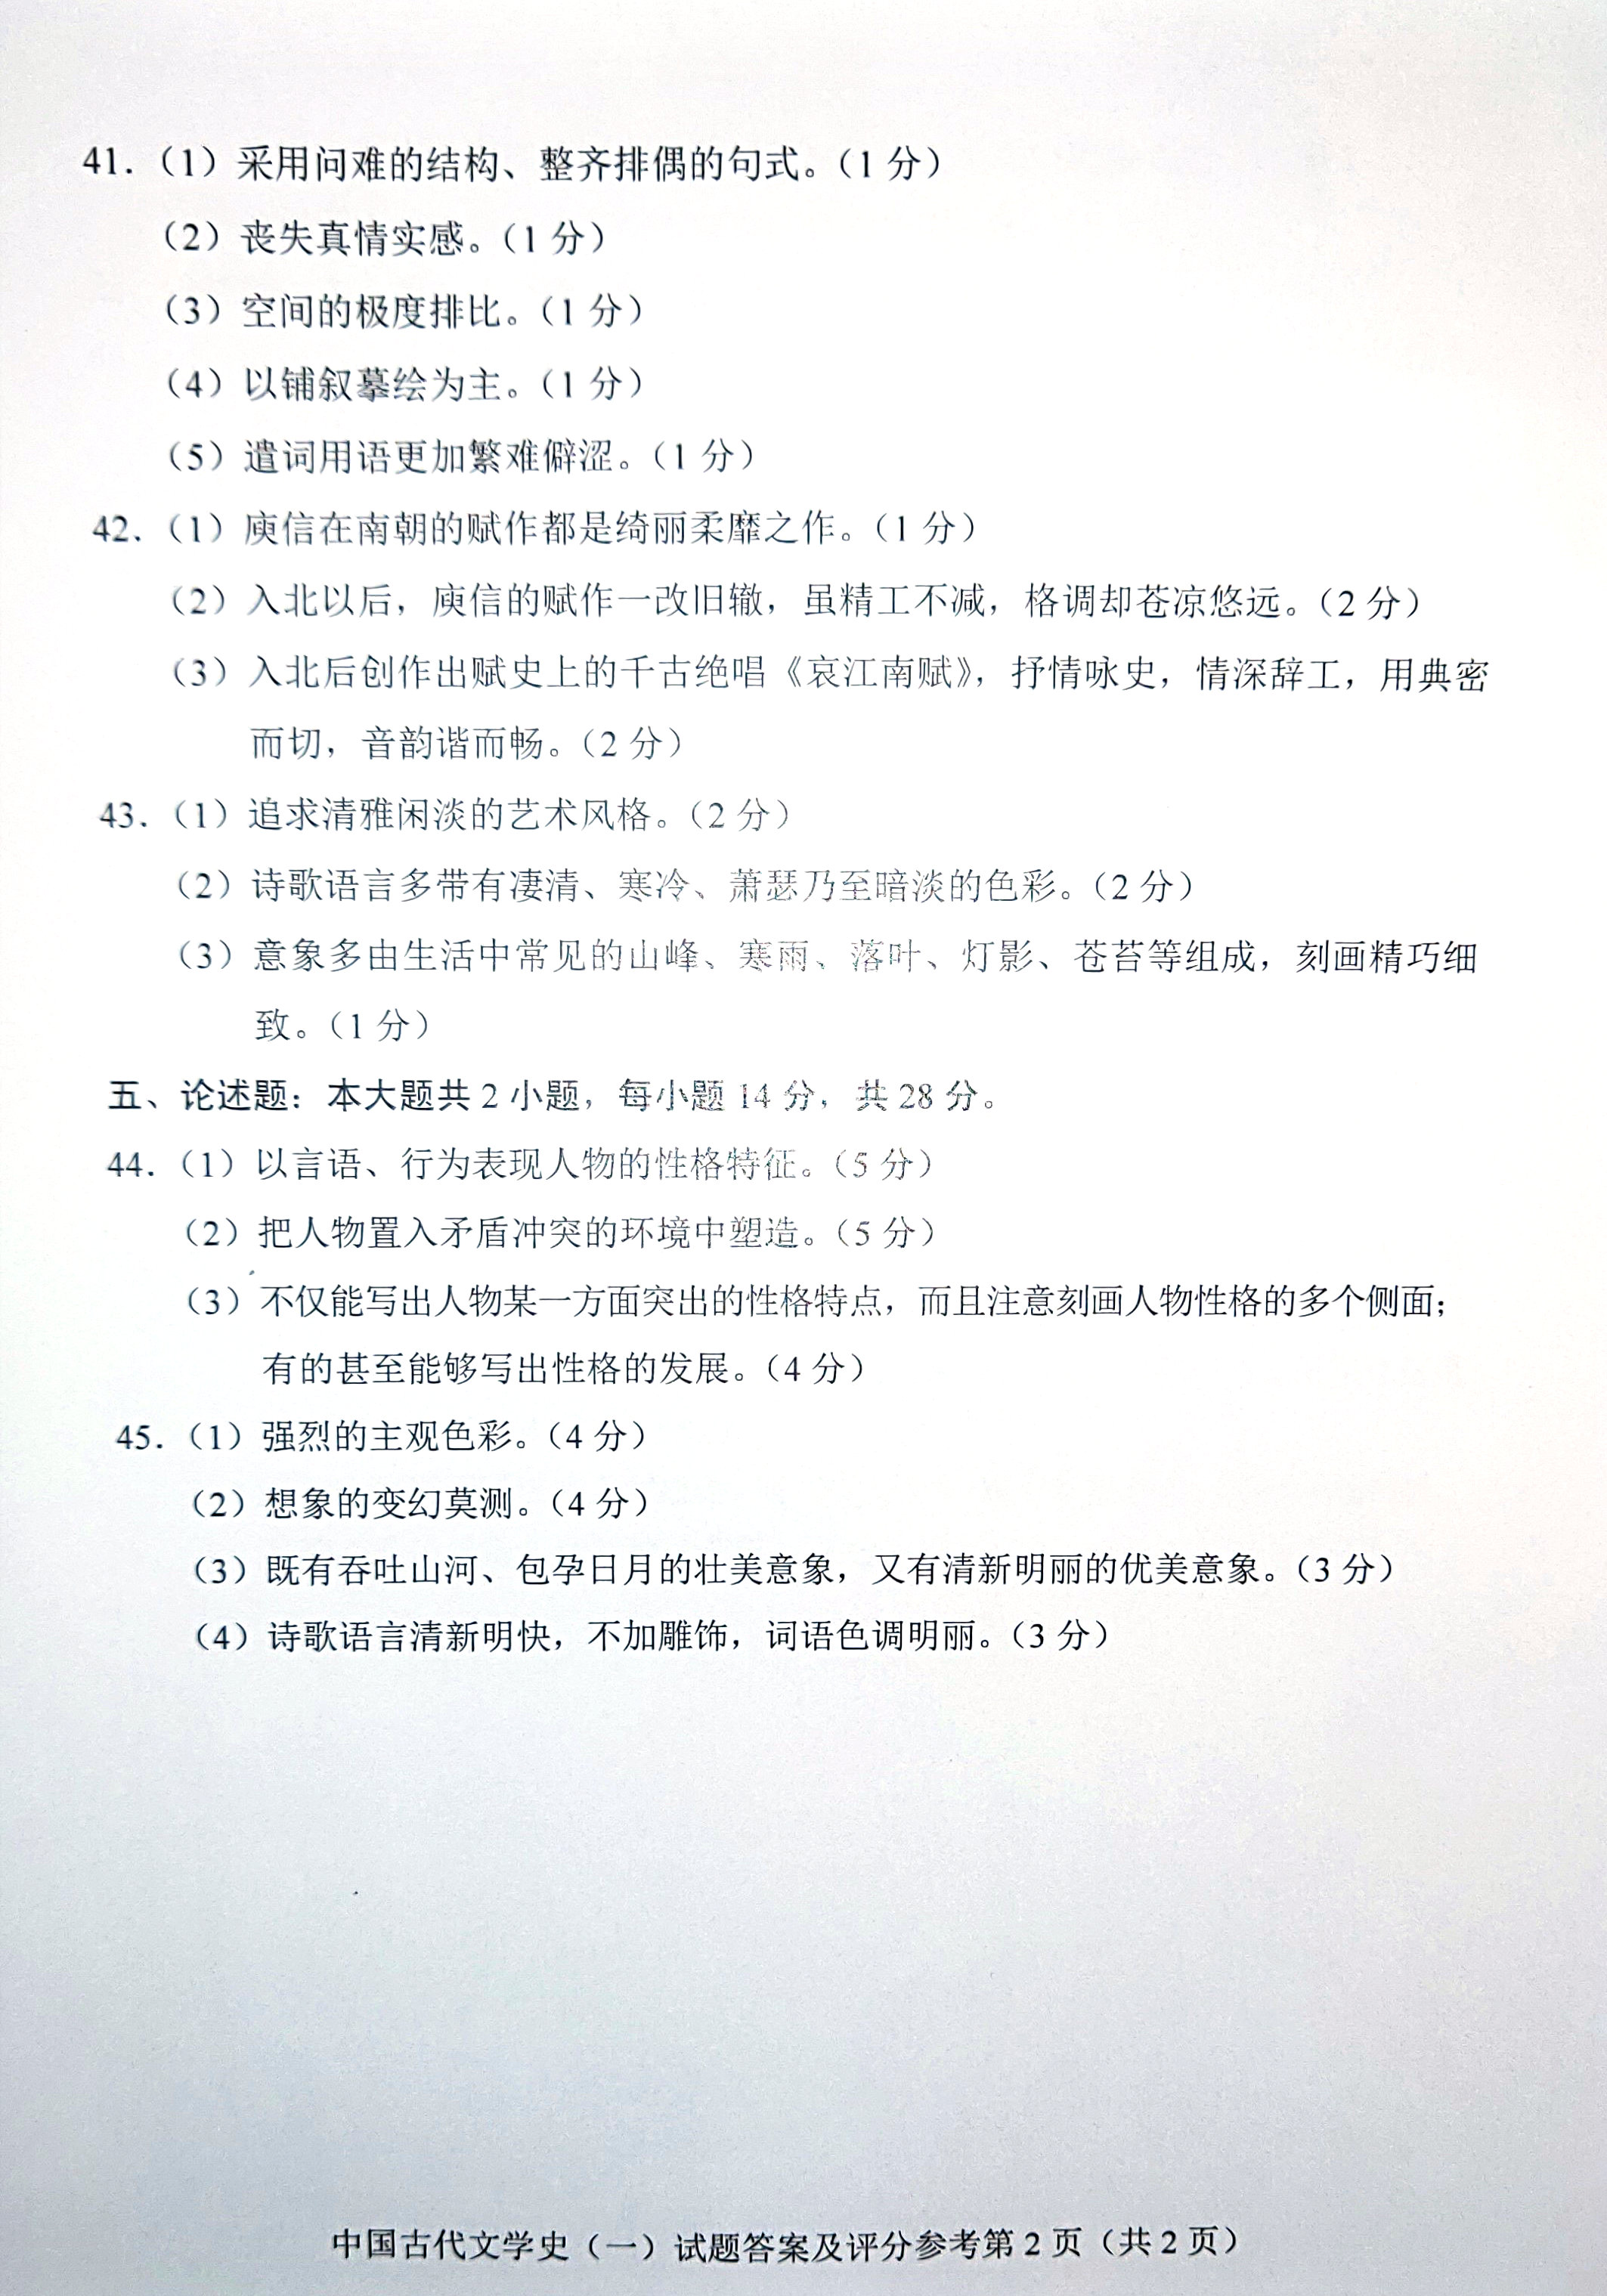 贵州自考2019年04月份00538中国古代文学史(一)真题及答案